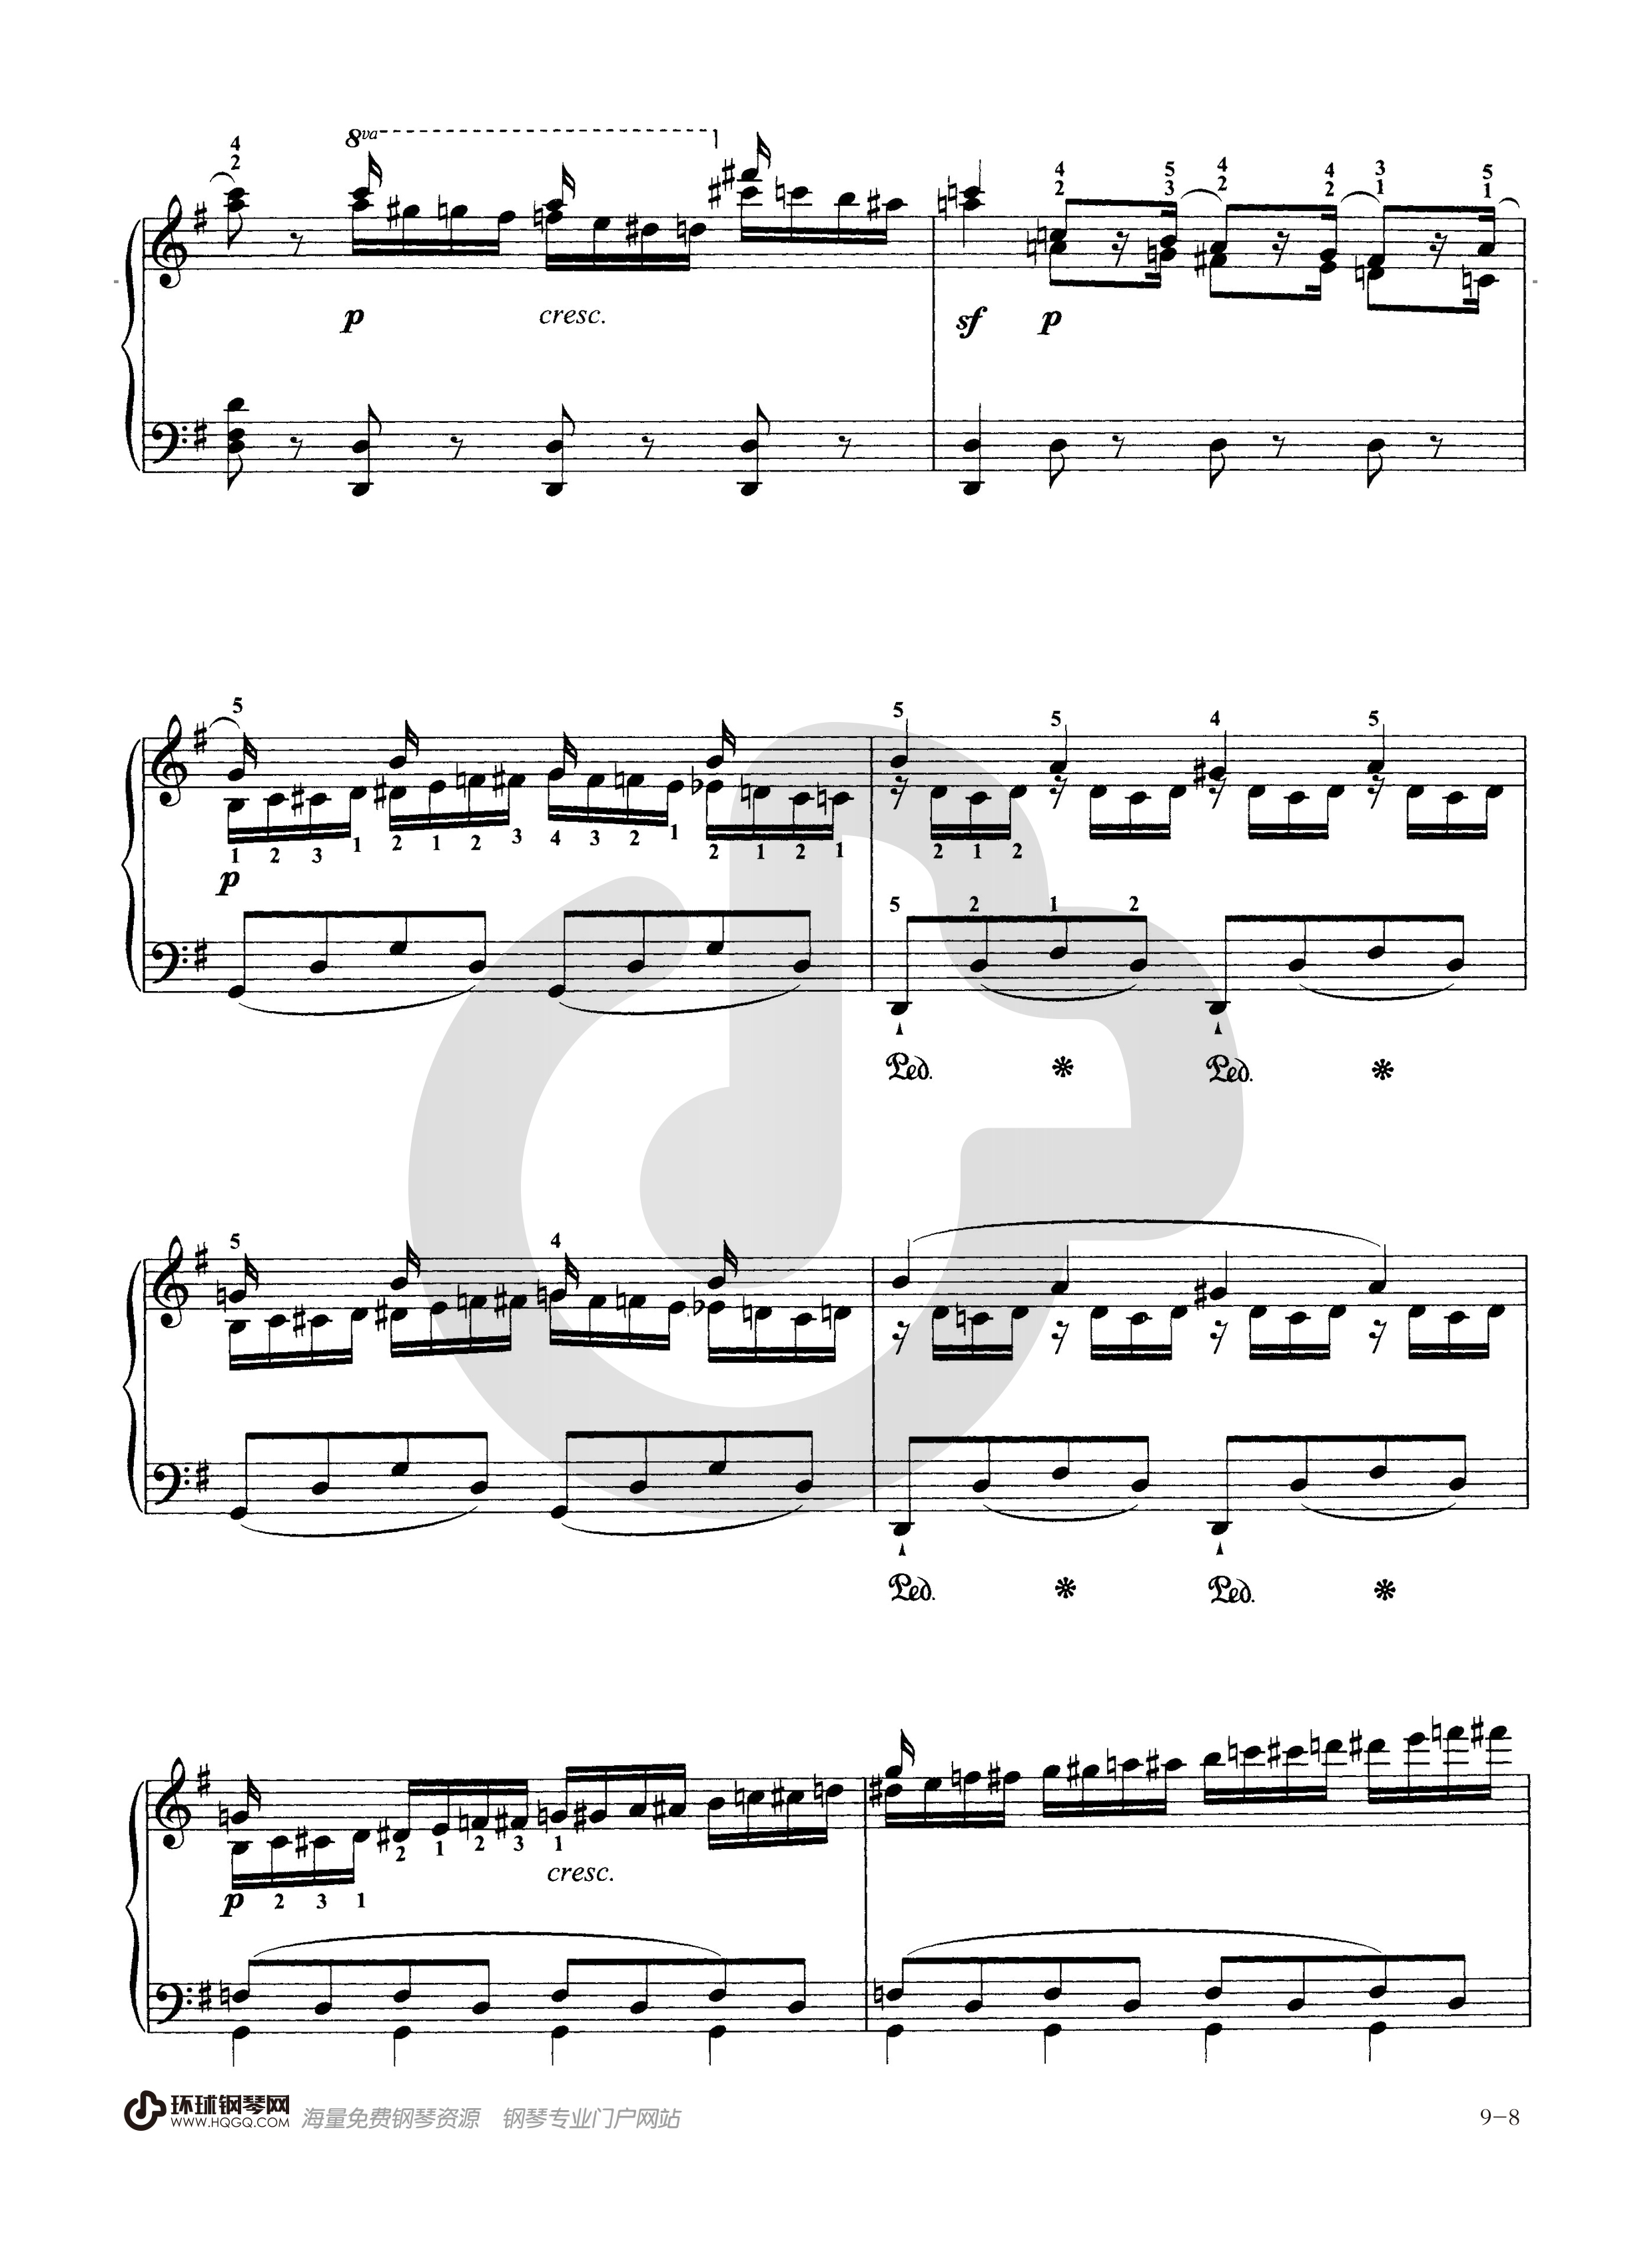 钢琴考级九级曲目谱子图片